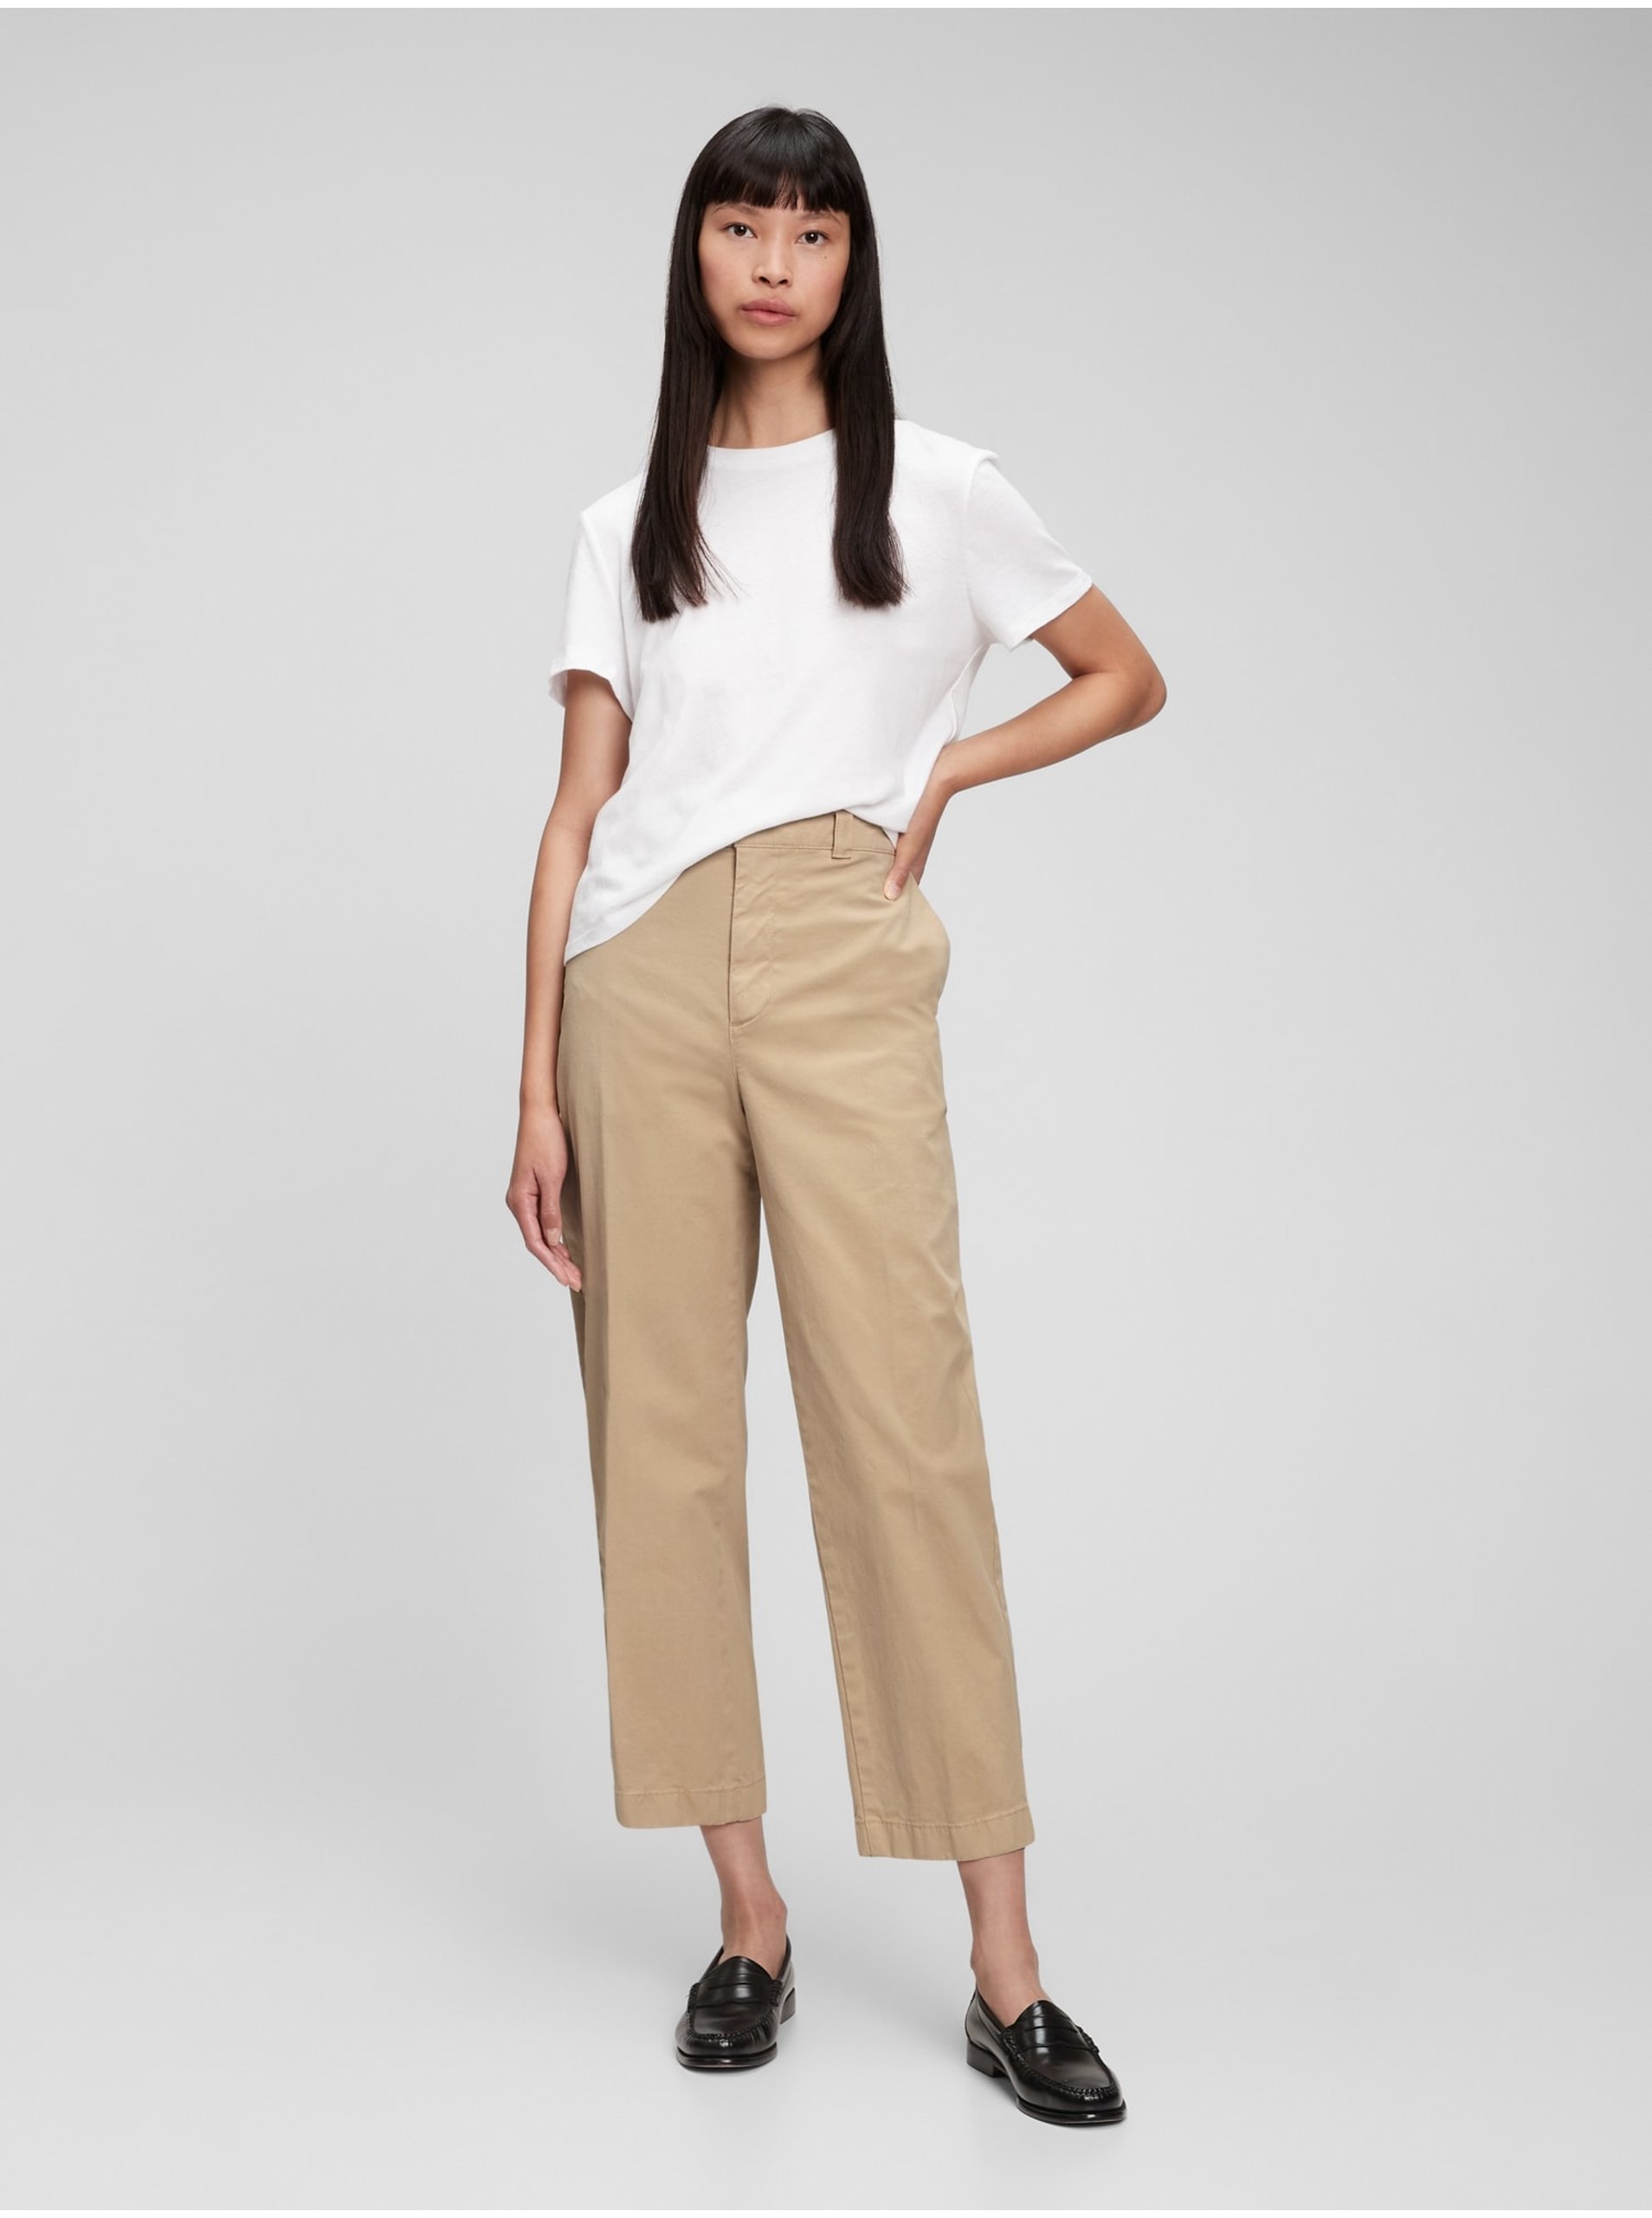 E-shop Béžové dámské kalhoty GAP straight khaki Washwell